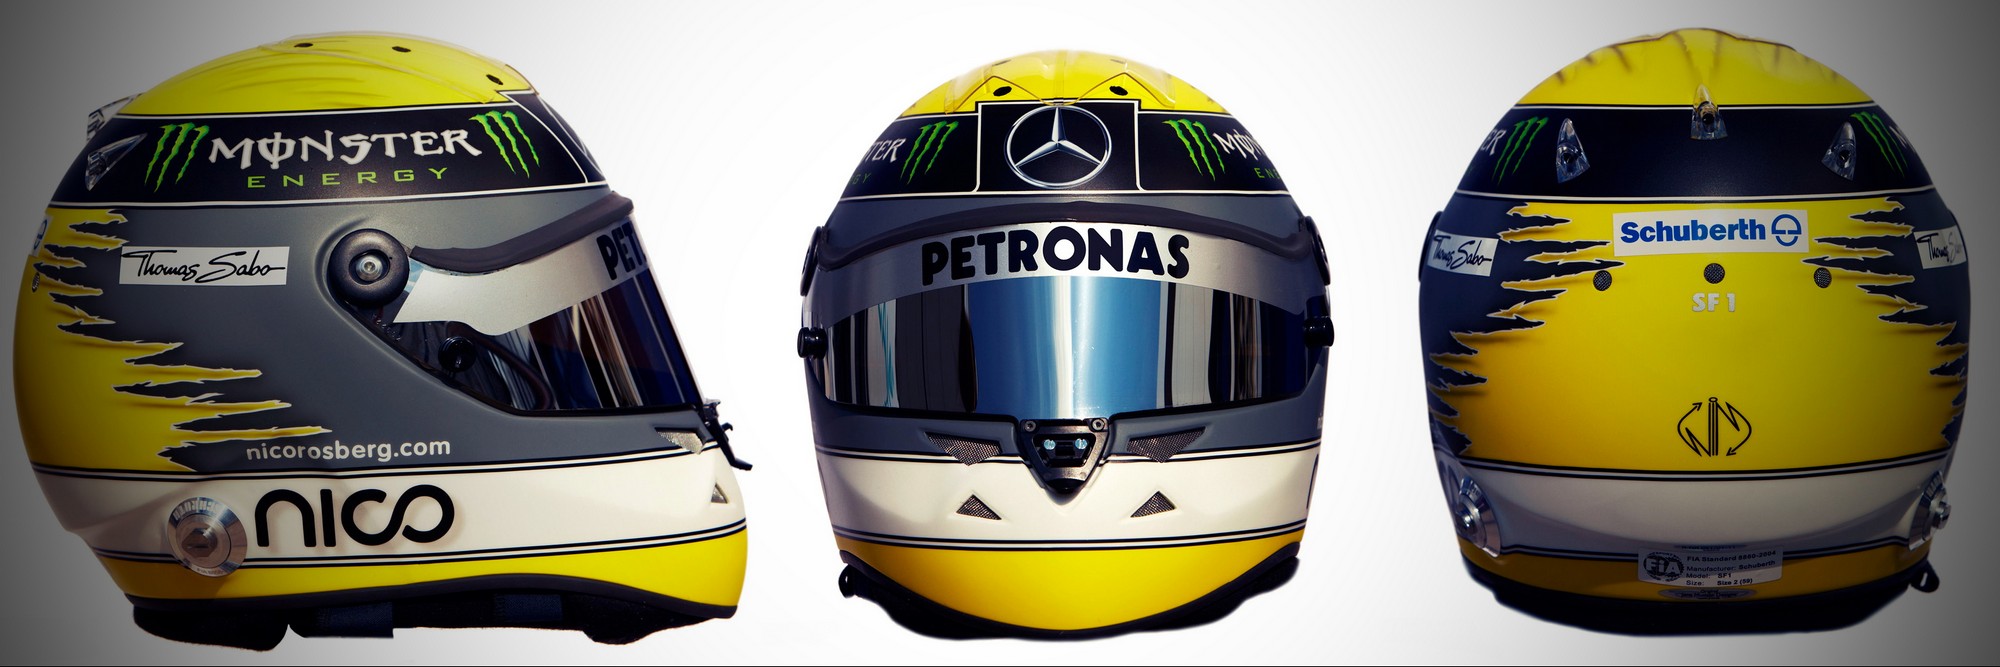 Шлем Нико Росберга на сезон 2011 года | 2011 helmet of Nico Rosberg